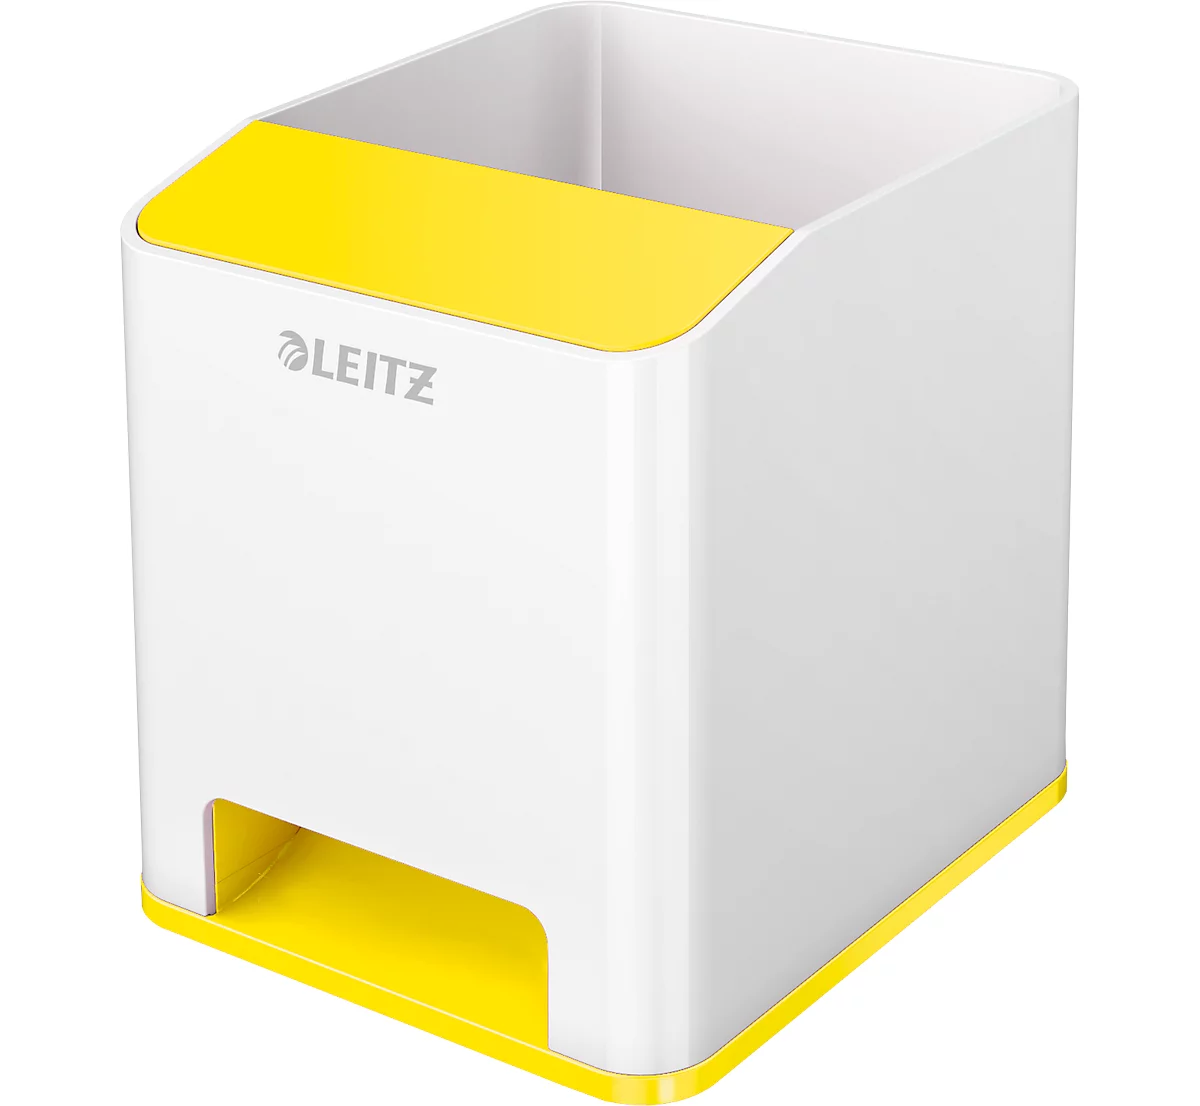 Stiftehalter Leitz WOW Sound, 1 Fach, Smartphone-Fach mit Soundverstärkung, weiß/gelb